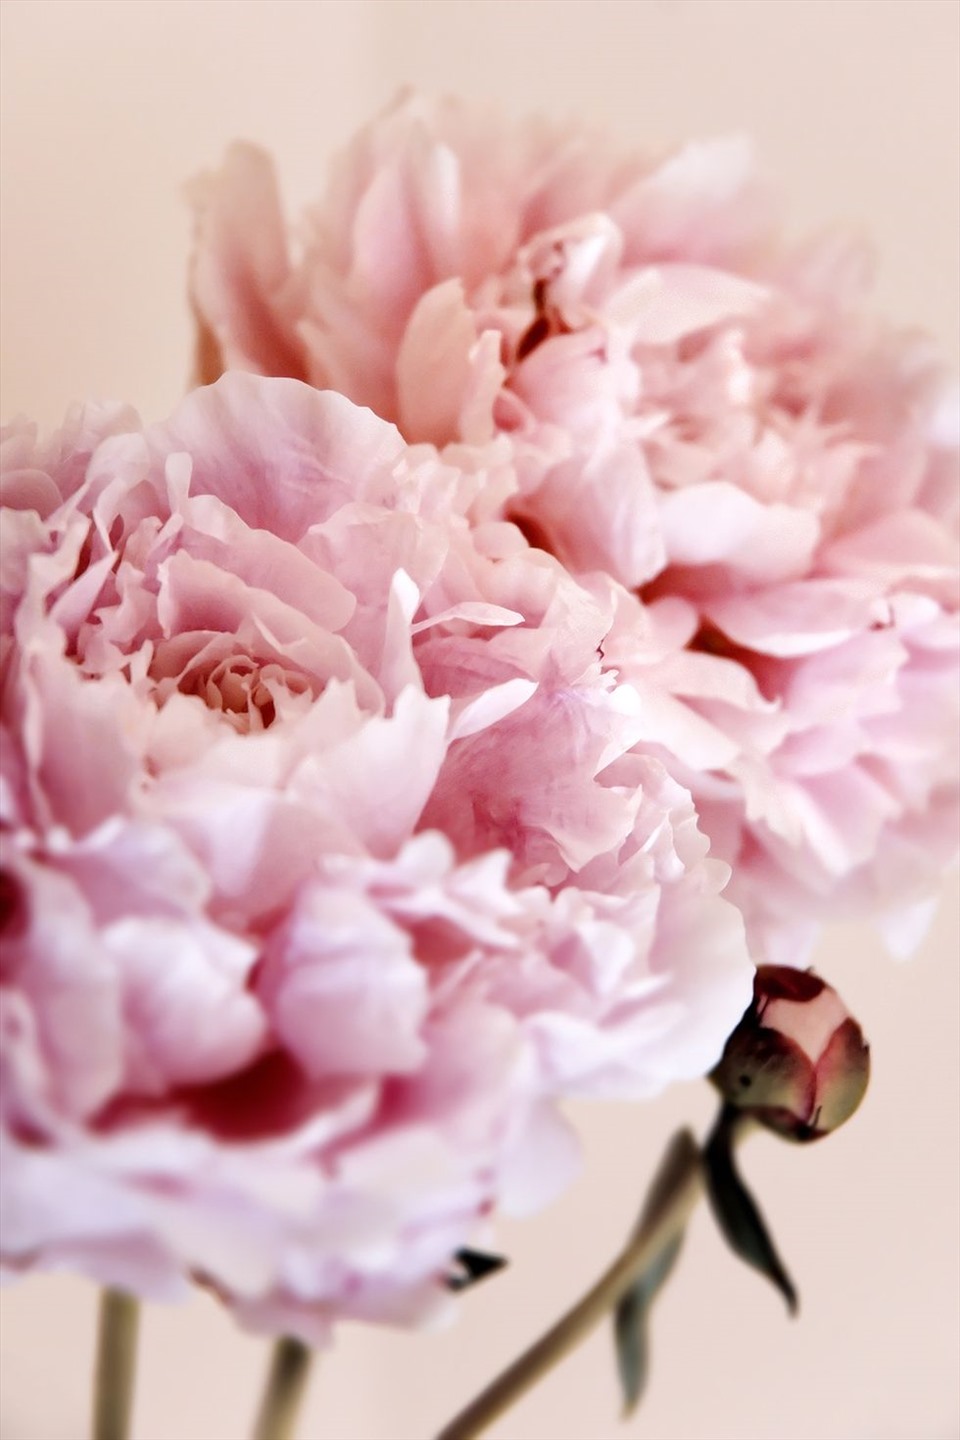 Một bó hoa Valentine thật đặc biệt sẽ khiến trái tim bạn rung động và phấn khích. Hãy ngắm nhìn những bông hoa tuyệt đẹp này để tìm kiếm sự lãng mạn và sự ngọt ngào của Valentine nhé.